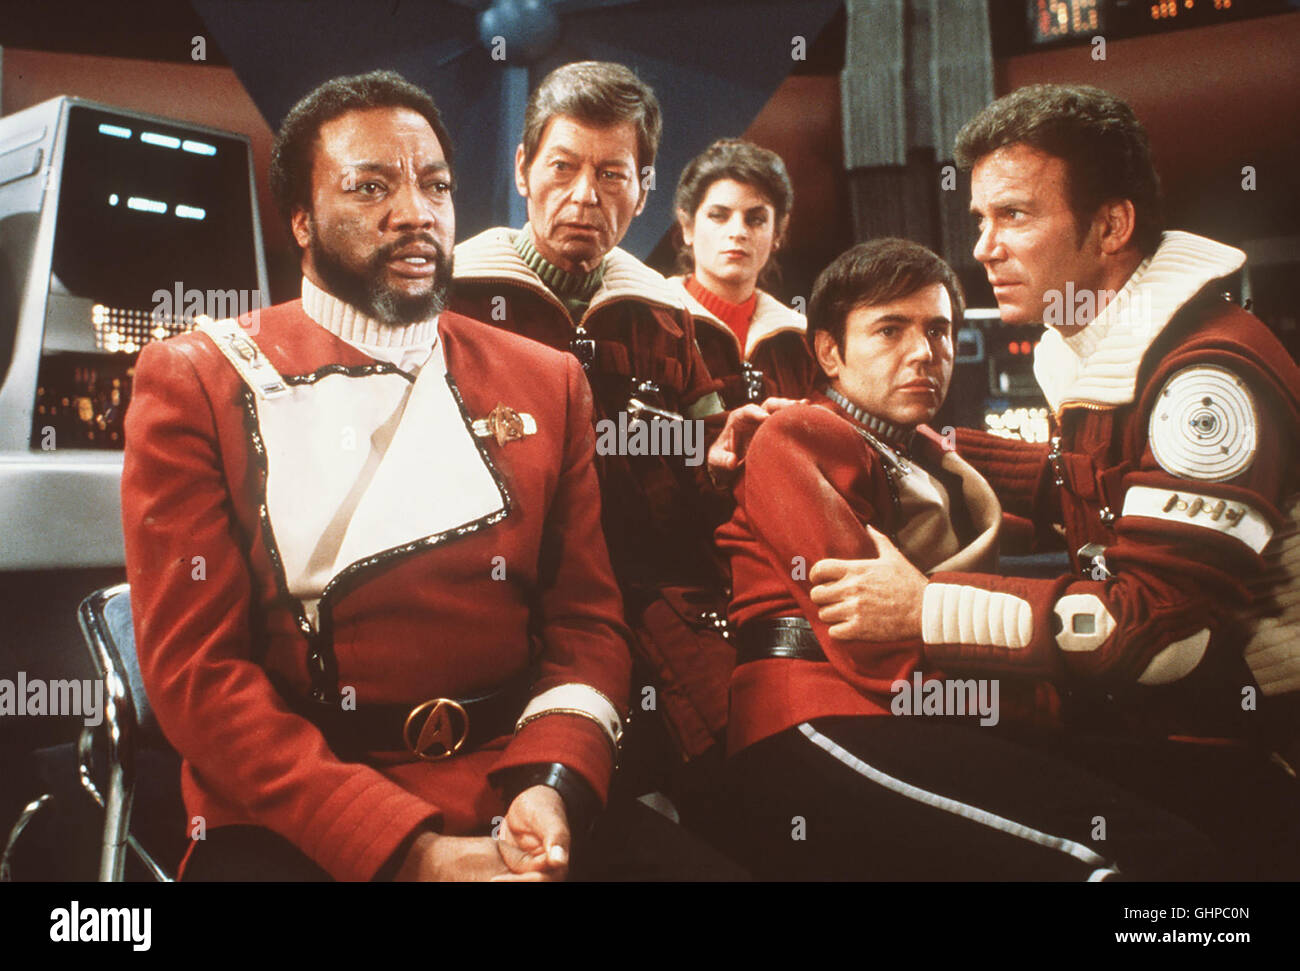 Star Trek II - Der zorn des khan Kirks modifier Erzfeind appliqué Khan mit einem gekaperten Raumschiff ein, une main-d'das am 'Genèse'-Projekt arbeitet : einem Materieumwandler, der in den falschen Händen zur tödlichen Waffe werden kann. Foto vlnr : (unbekannt), le Dr McCoy (DEFOREST KELLEY), Saavik (Kirstie Alley), Chekov (Walter Koenig), l'amiral Kirk (William SHATNER). Regie : Nicholas Meyer aka. Star Trek II - La colère de Khan Banque D'Images